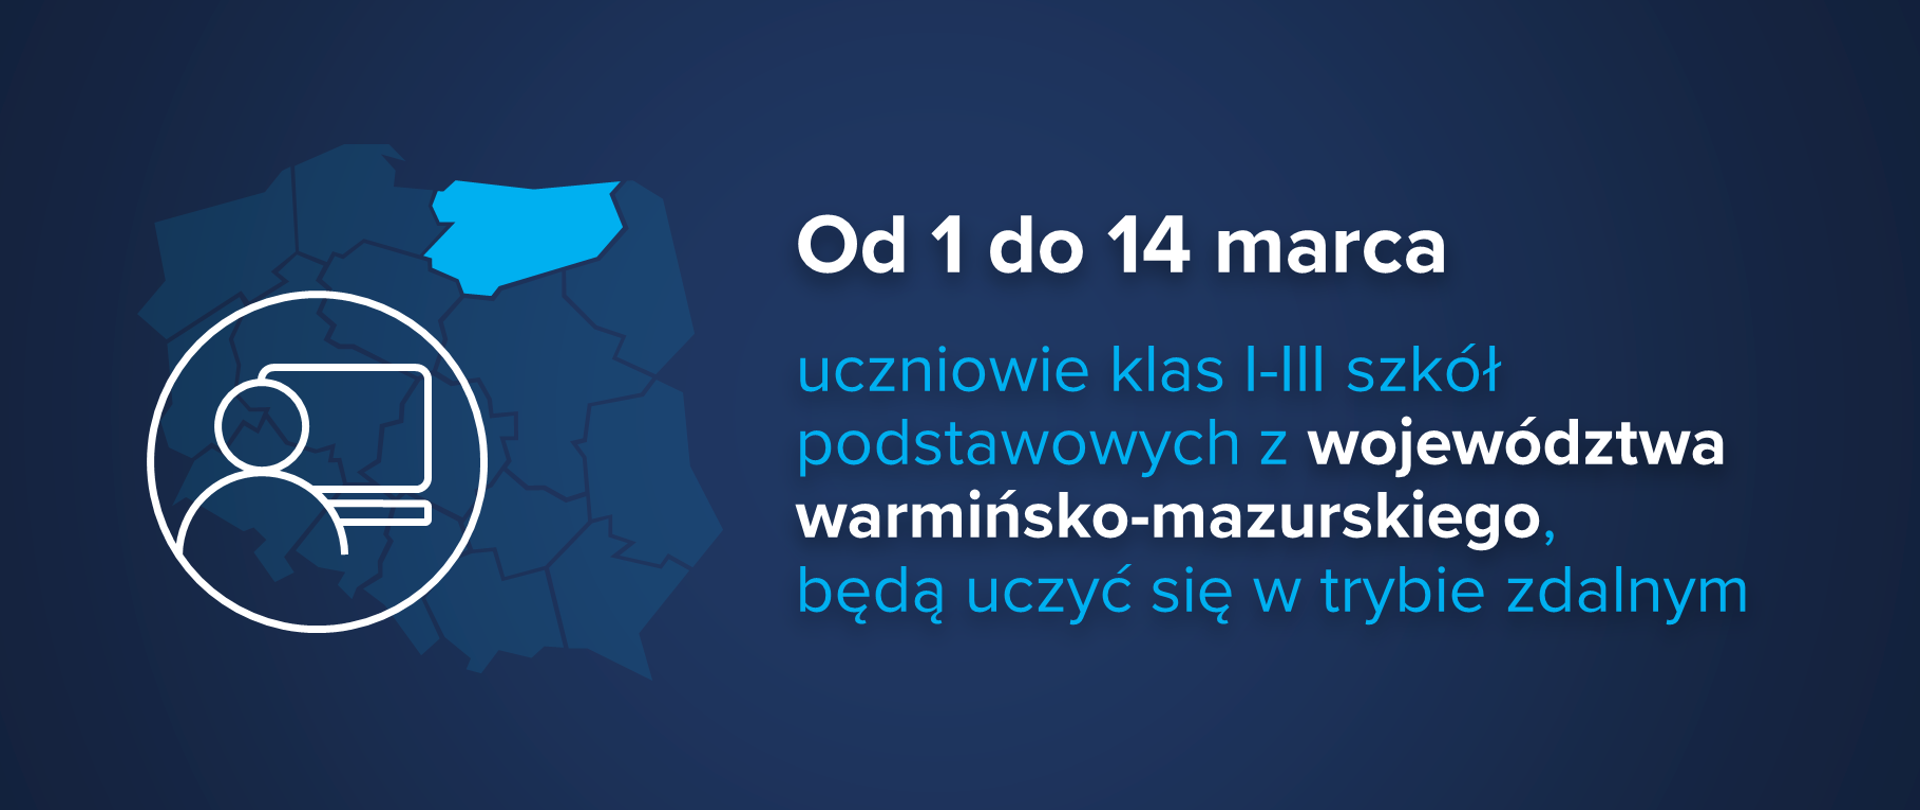 Grafika z tekstem: "Od 1 do 14 marca uczniowie klas I-III szkół podstawowych z województwa warmińsko-mazurskiego, będą uczyć się w trybie zdalnym"